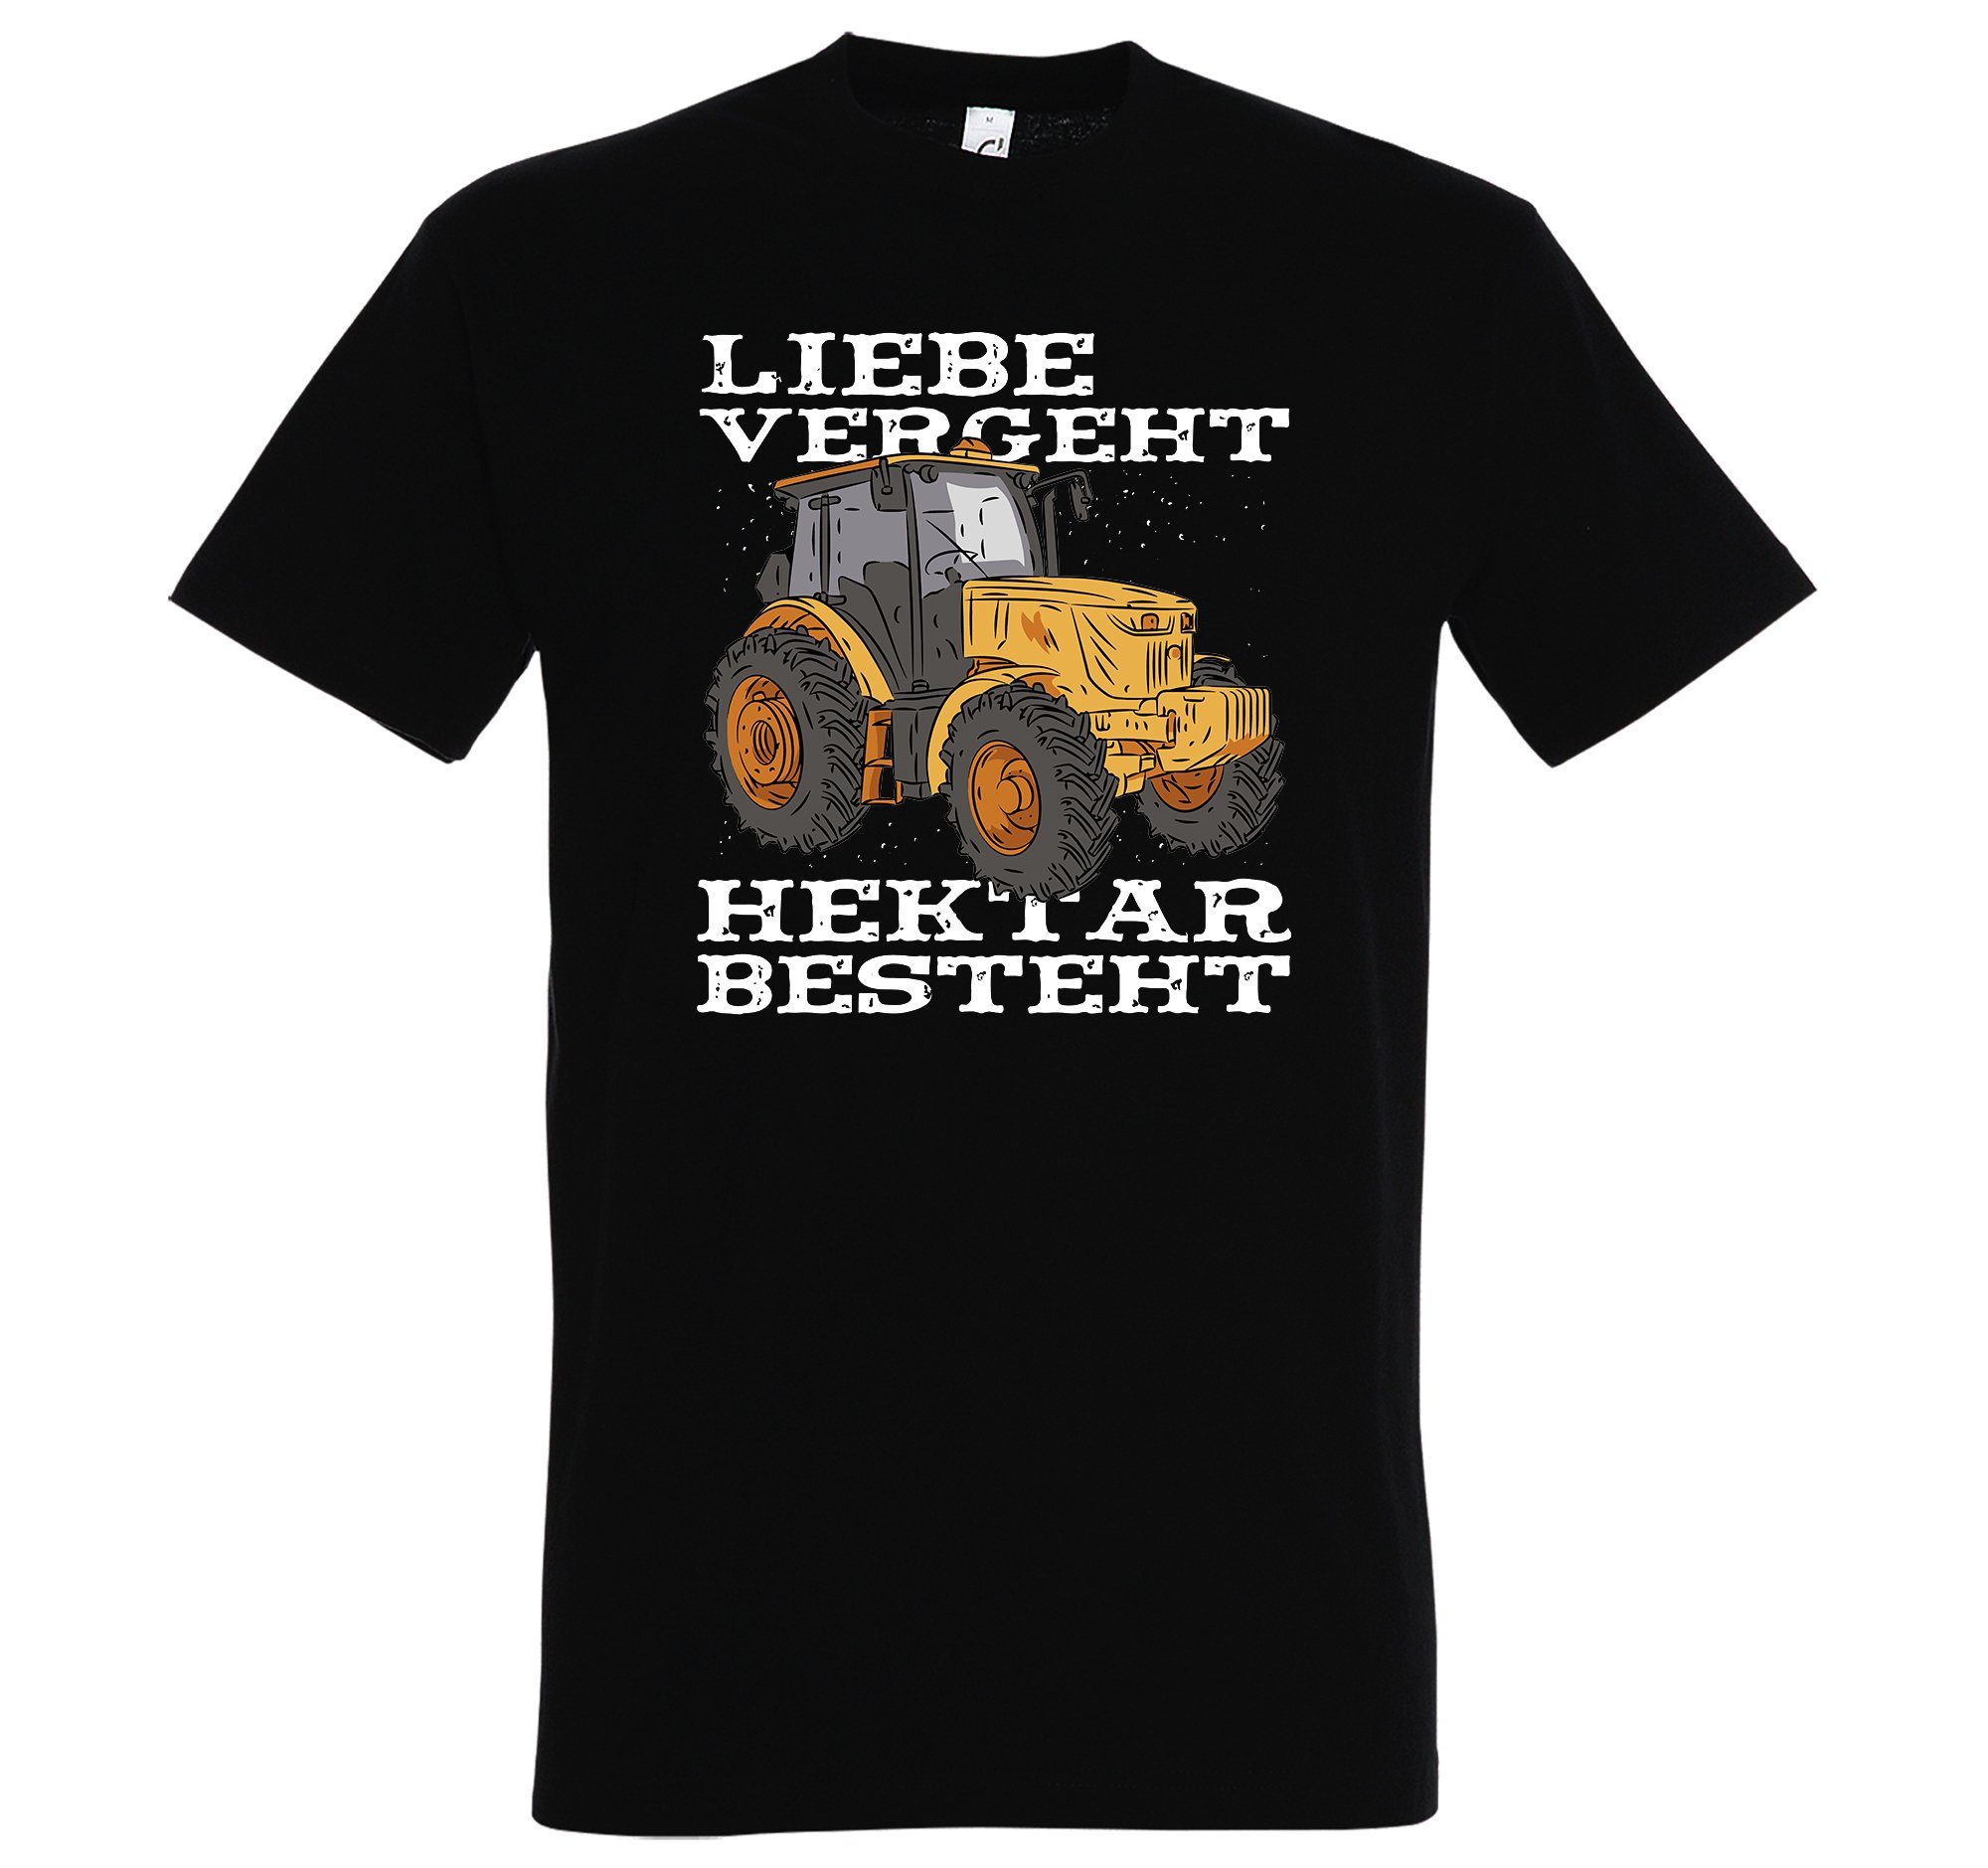 Youth Designz T-Shirt "Liebe Vergeht, Liebe Besteht" Herren Shirt mit trendigem Frontprint Schwarz